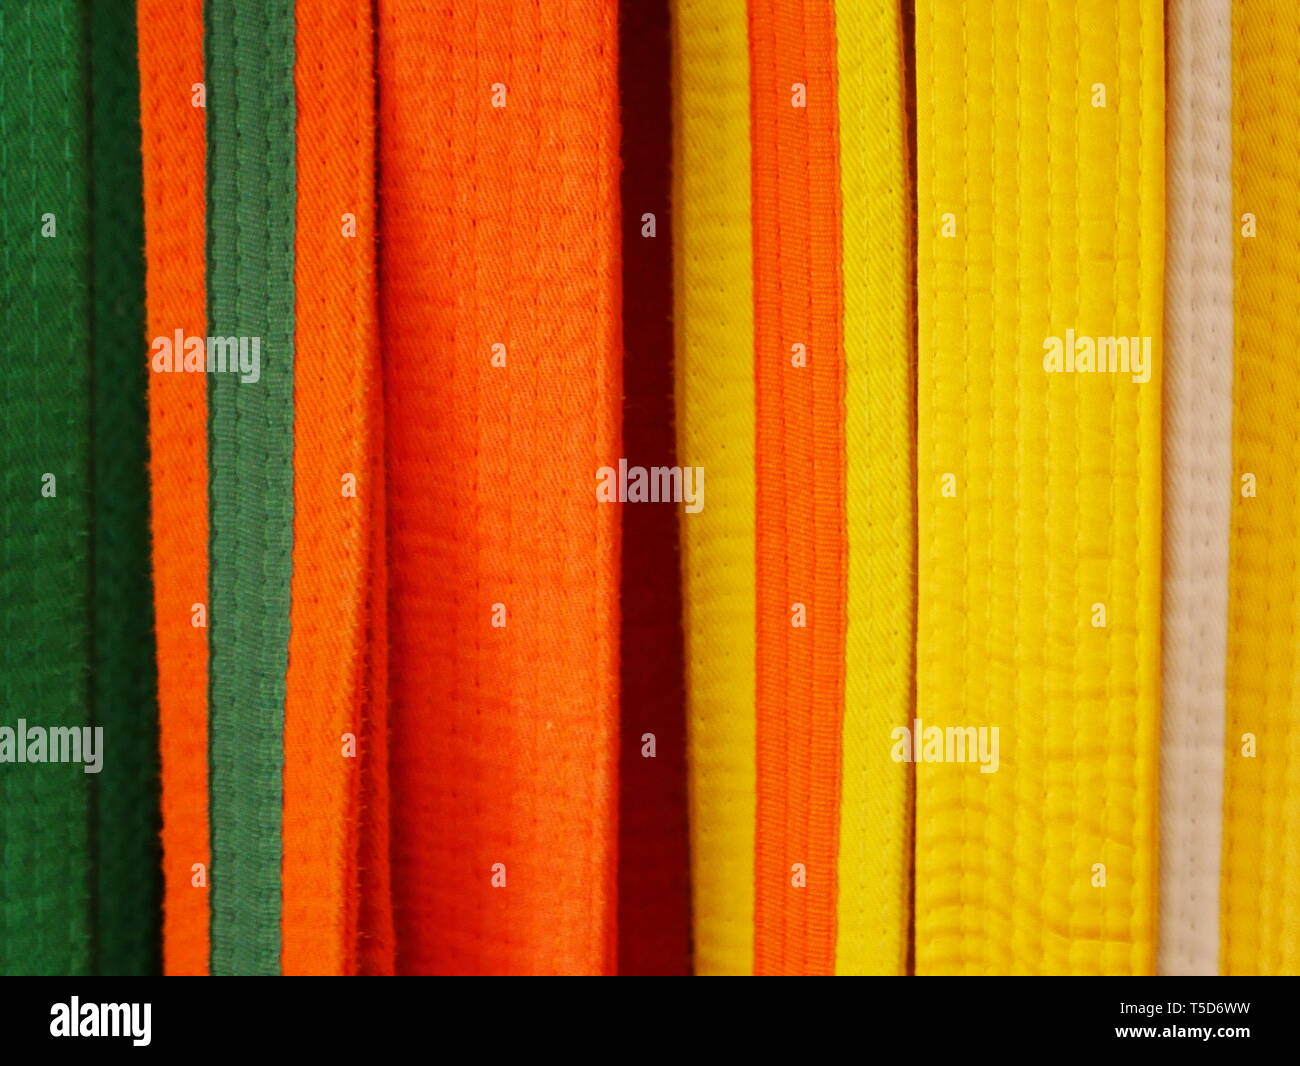 Primo piano di arti marziali cinghie per il karate o kickboxing - bianco con cartellino giallo, giallo, giallo con etichetta arancione, arancione, arancione con etichetta verde, verde Foto Stock